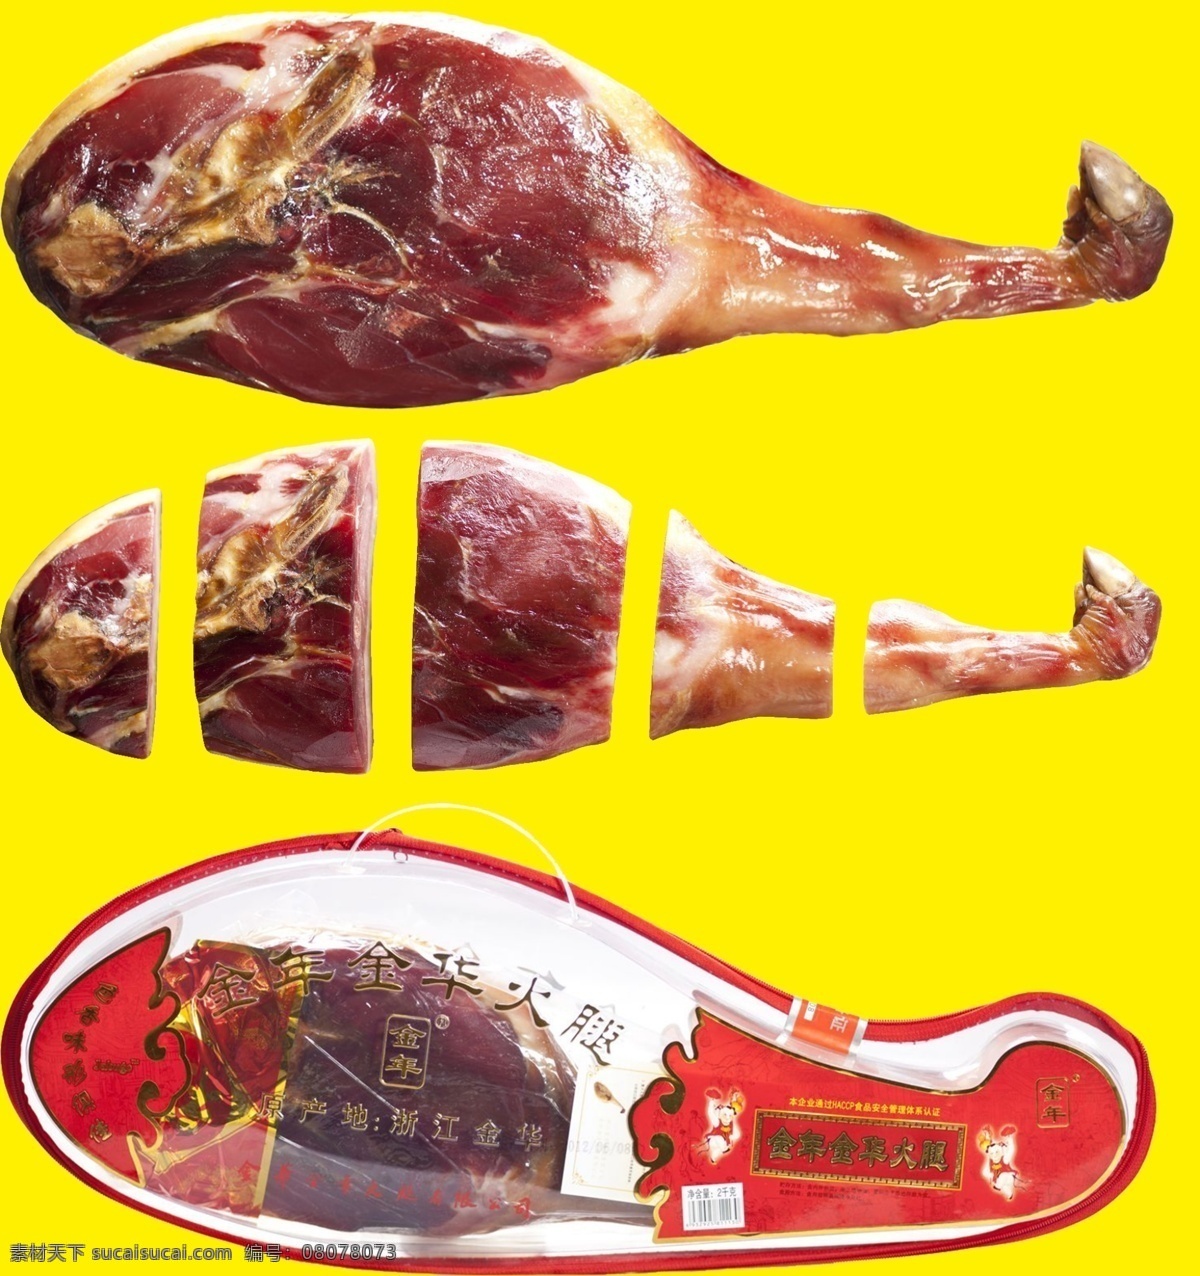 金华 特产 火腿 照片 抠 图 浙江 美食 礼品 猪肉 腊肉 包装 原创 分层